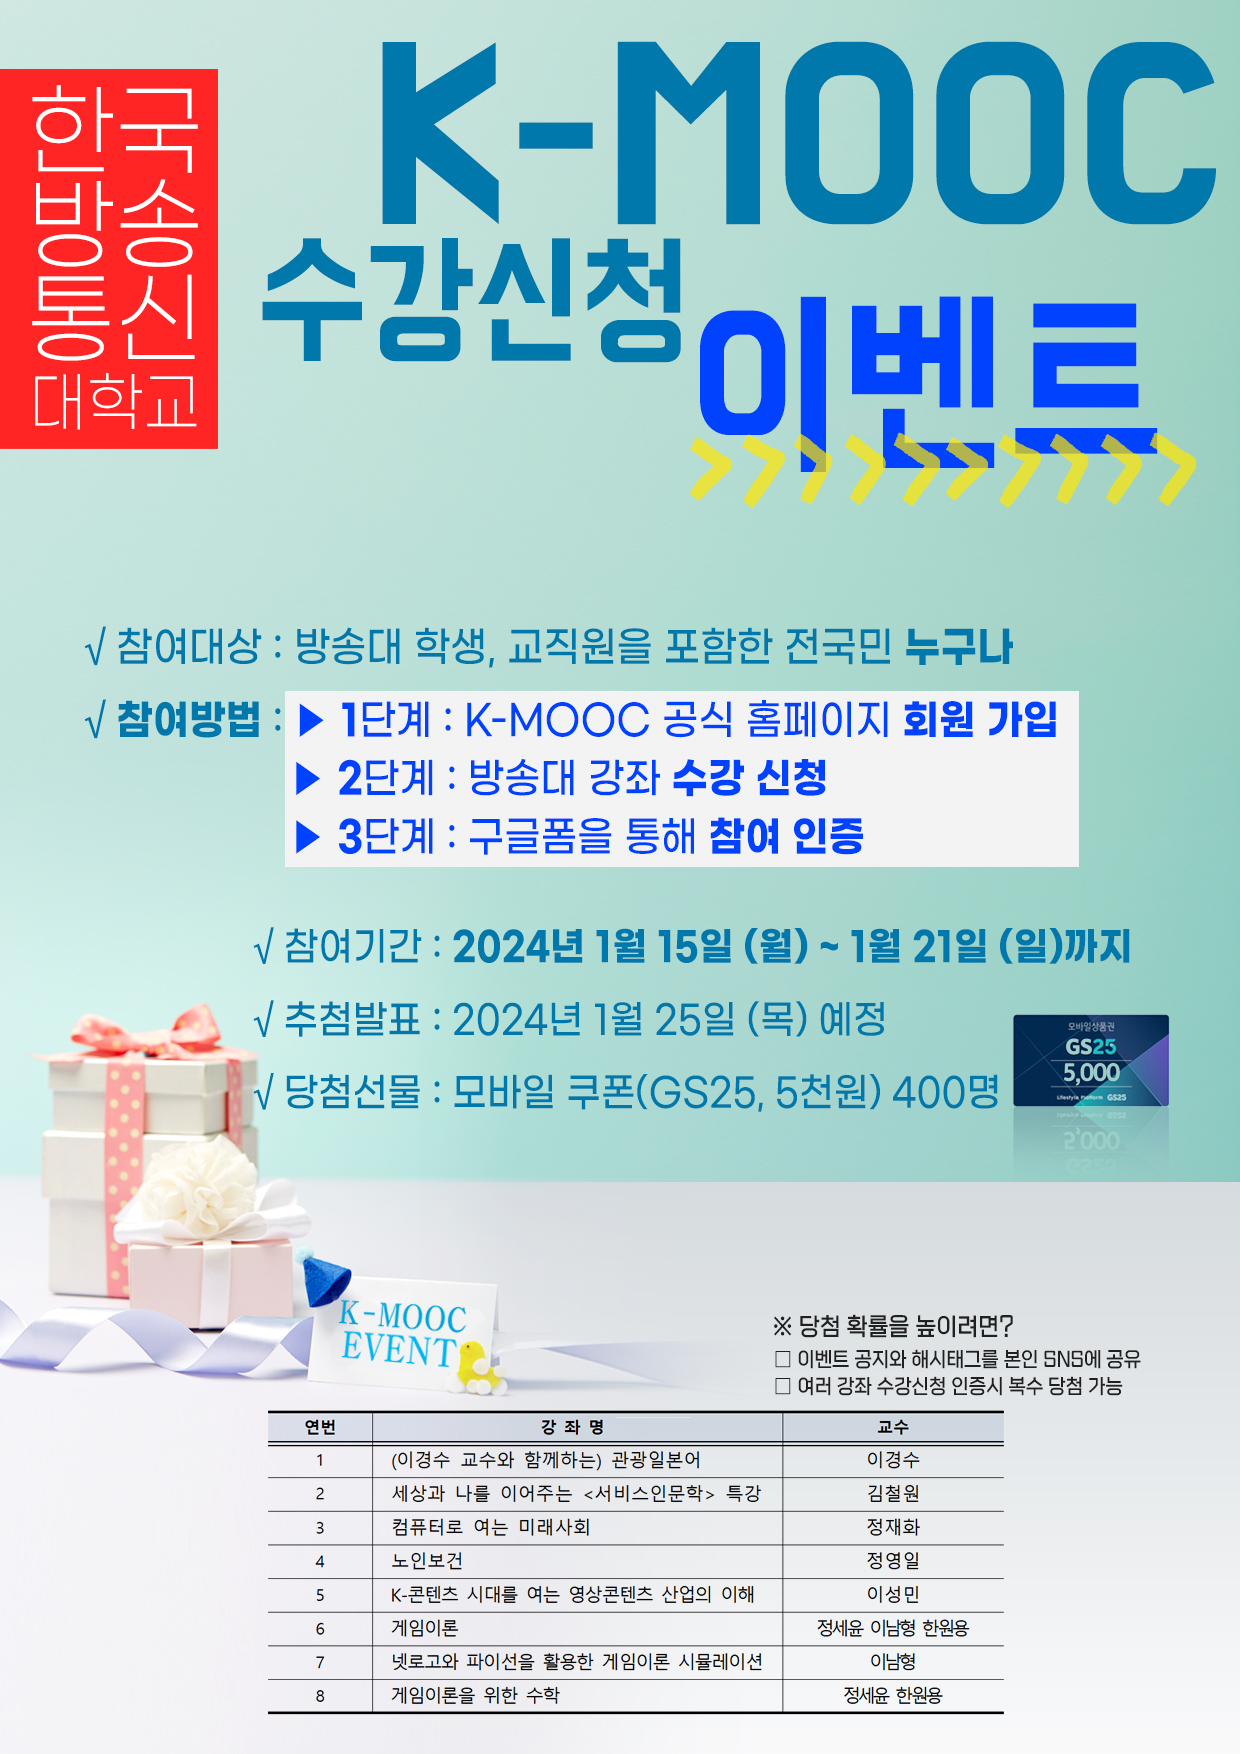 한국방송통신대학교 K-MOOC 수강신청 이벤트